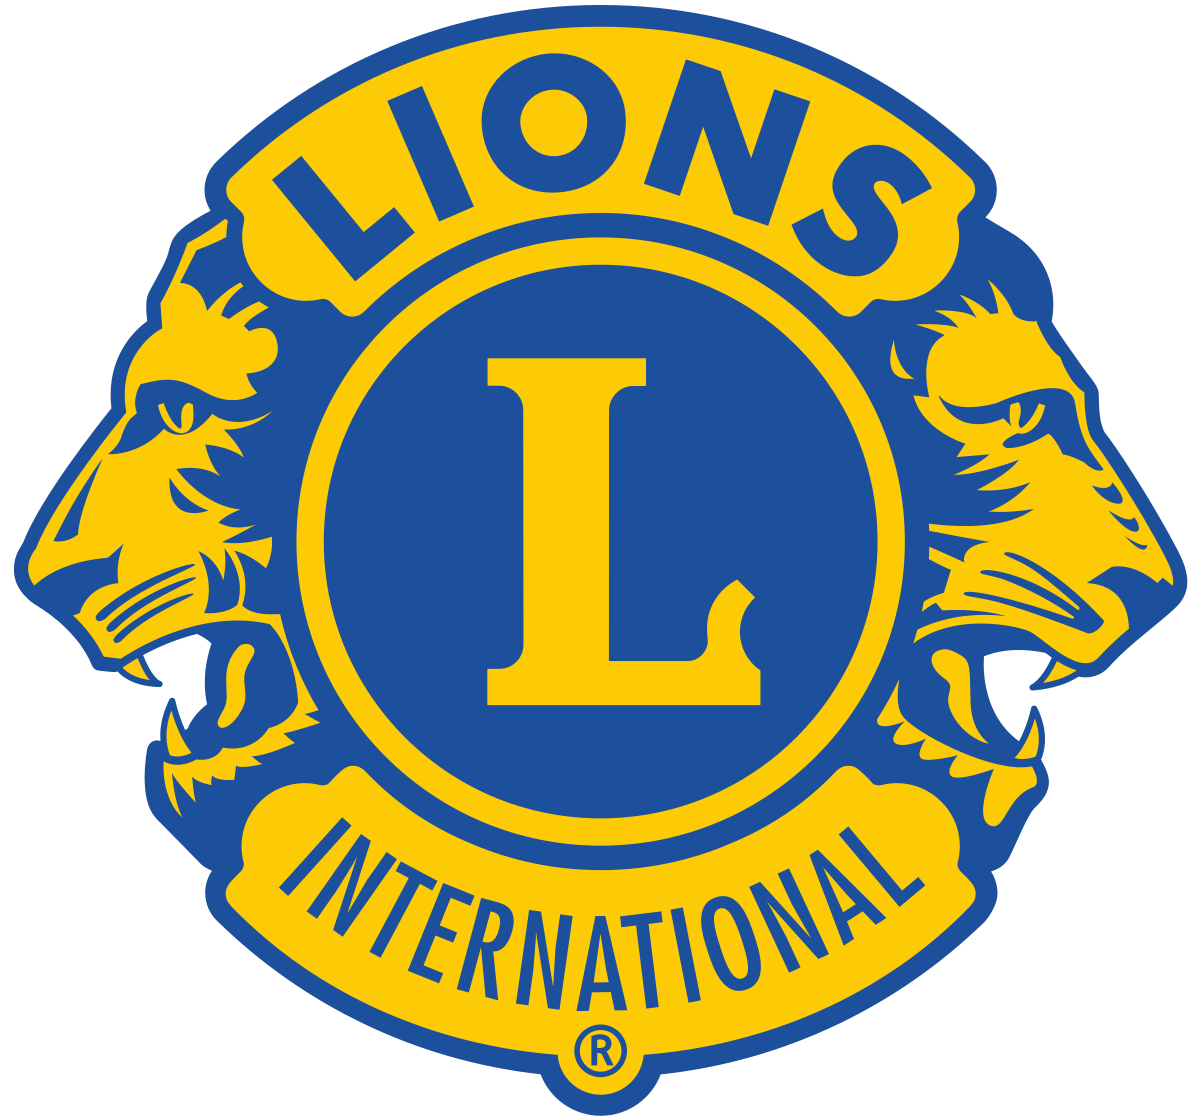 San Diego Peninsula Lions Club